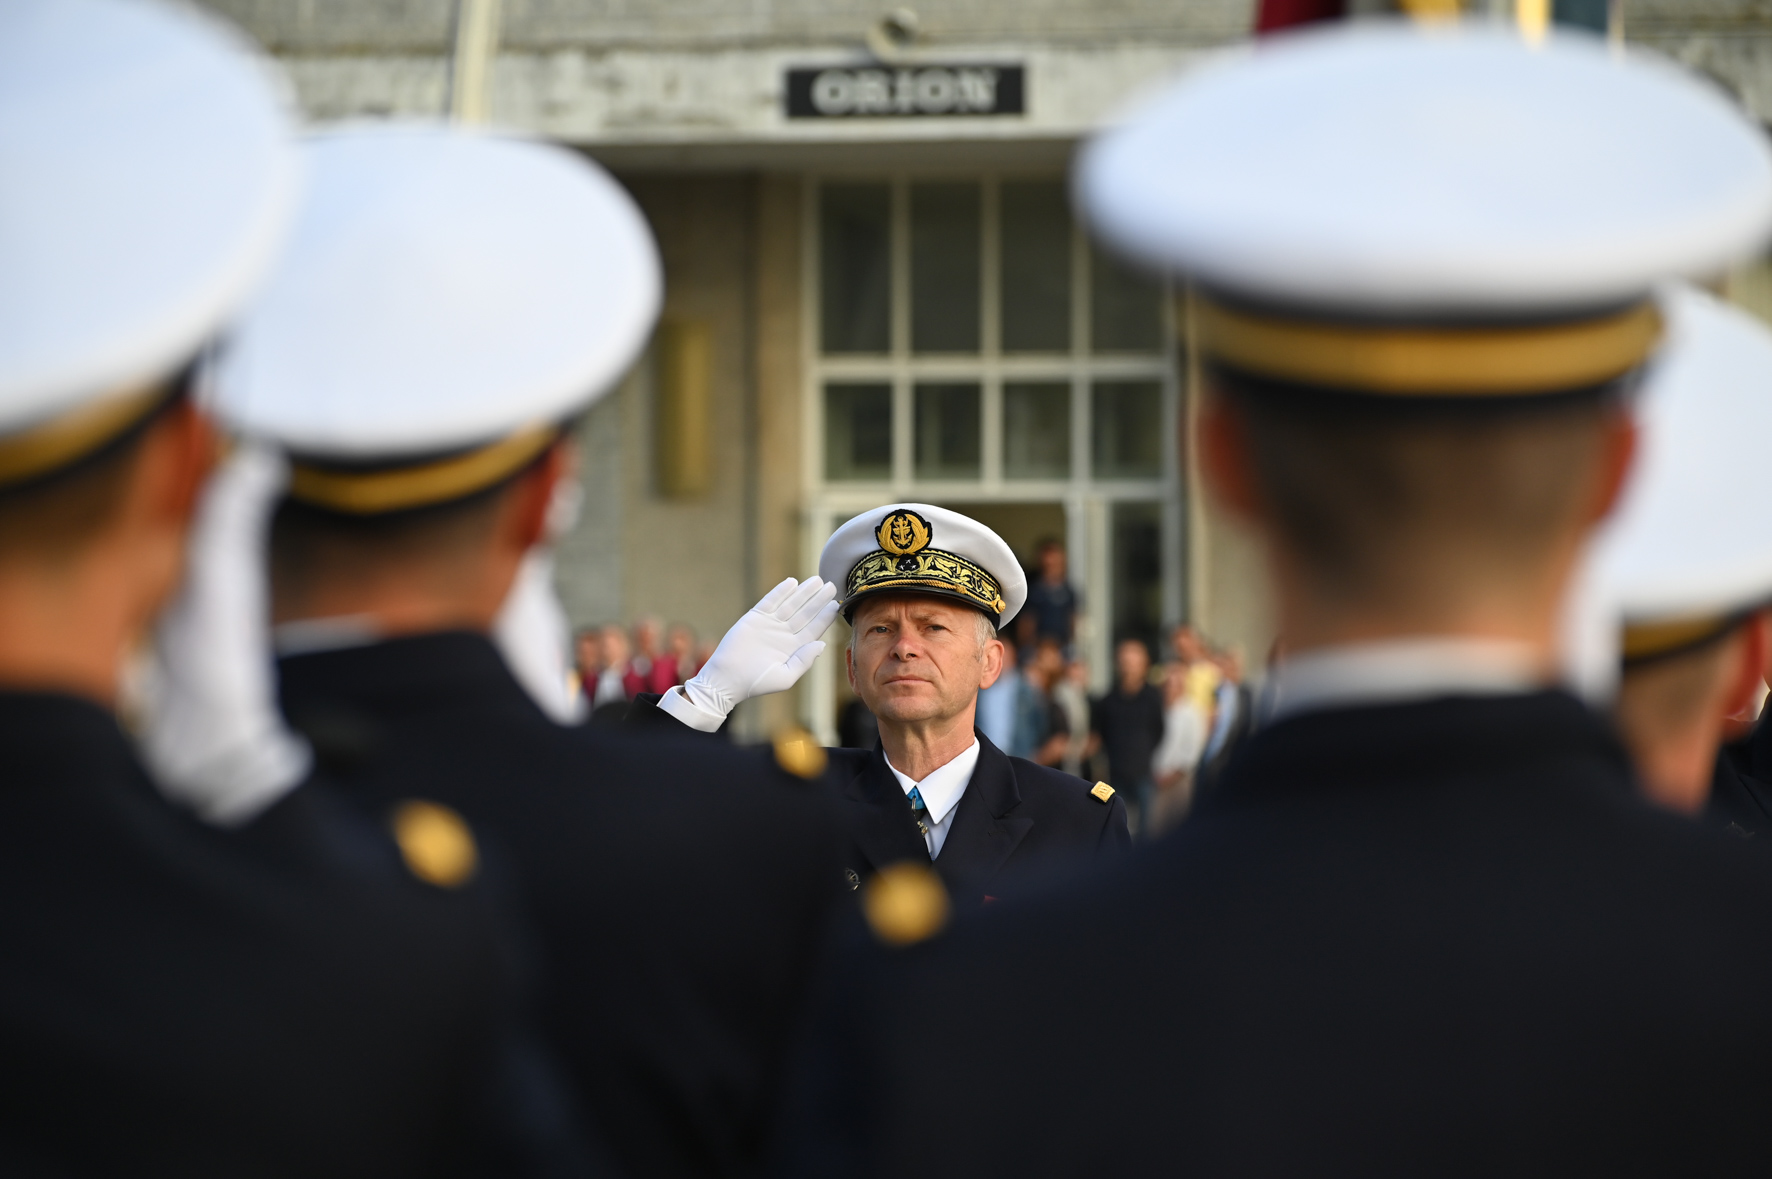 Le vice-amiral Laurent Hemmer, nouveau commandant pour l’École navale